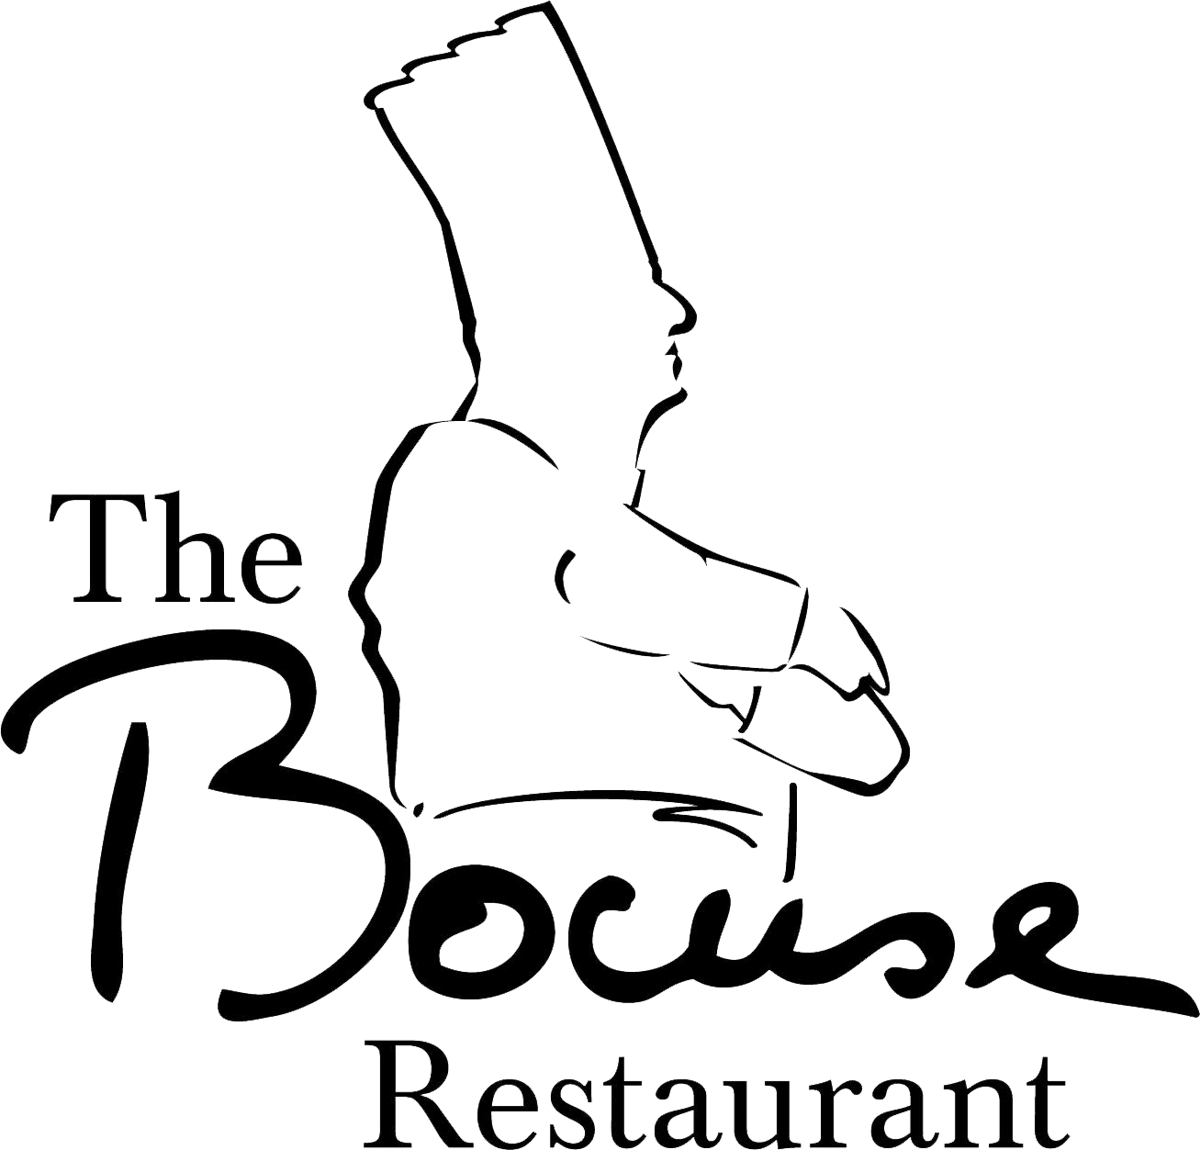 the bocuse restaurant logo